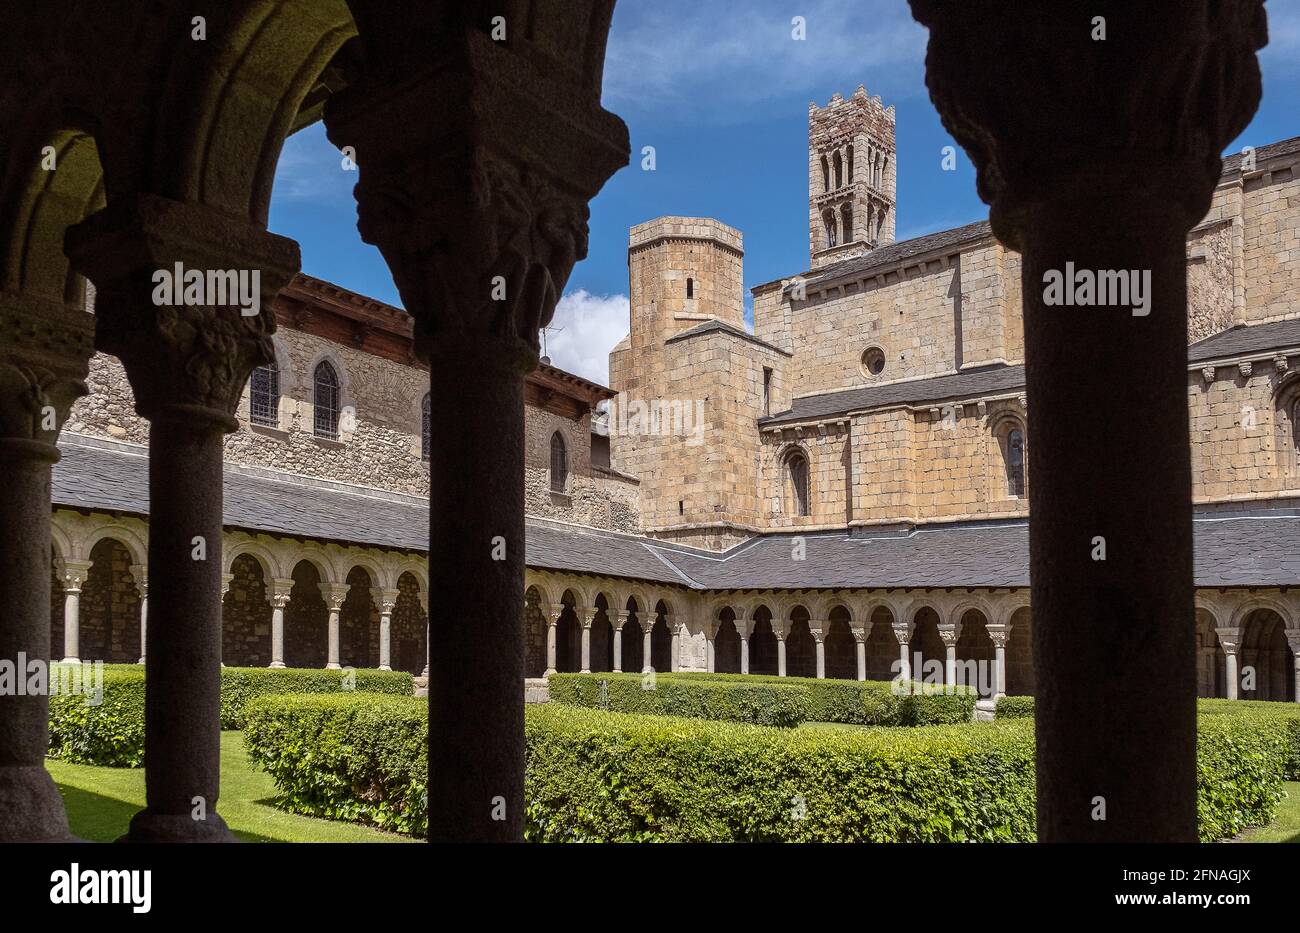 Coister de Sant Miquel, cloîtres de la cathédrale romane de Santa Maria, la Seu d'Urgell, Lleida, Catalogne, Espagne Banque D'Images